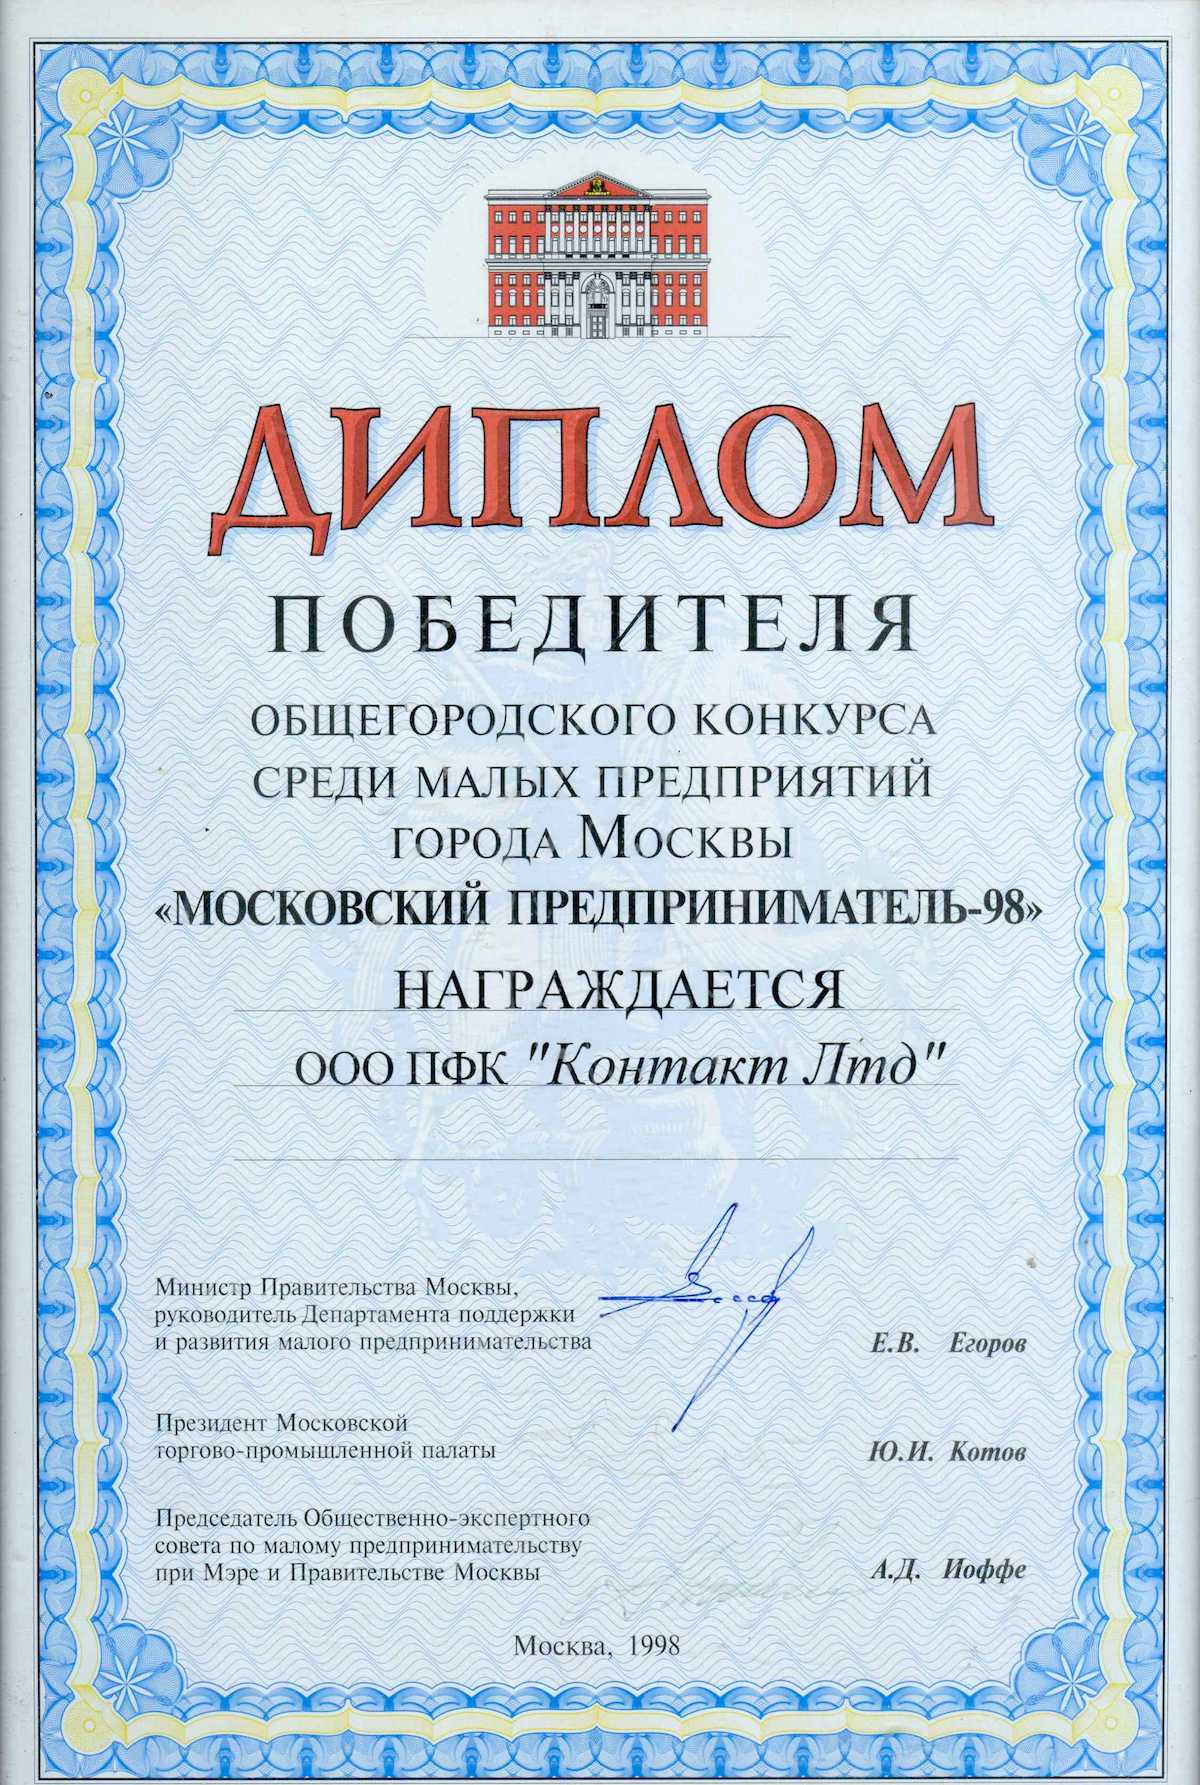 Диплом победителя общегородского конкурса среди малых предприятий города Москвы «Московской предприниматель-98»